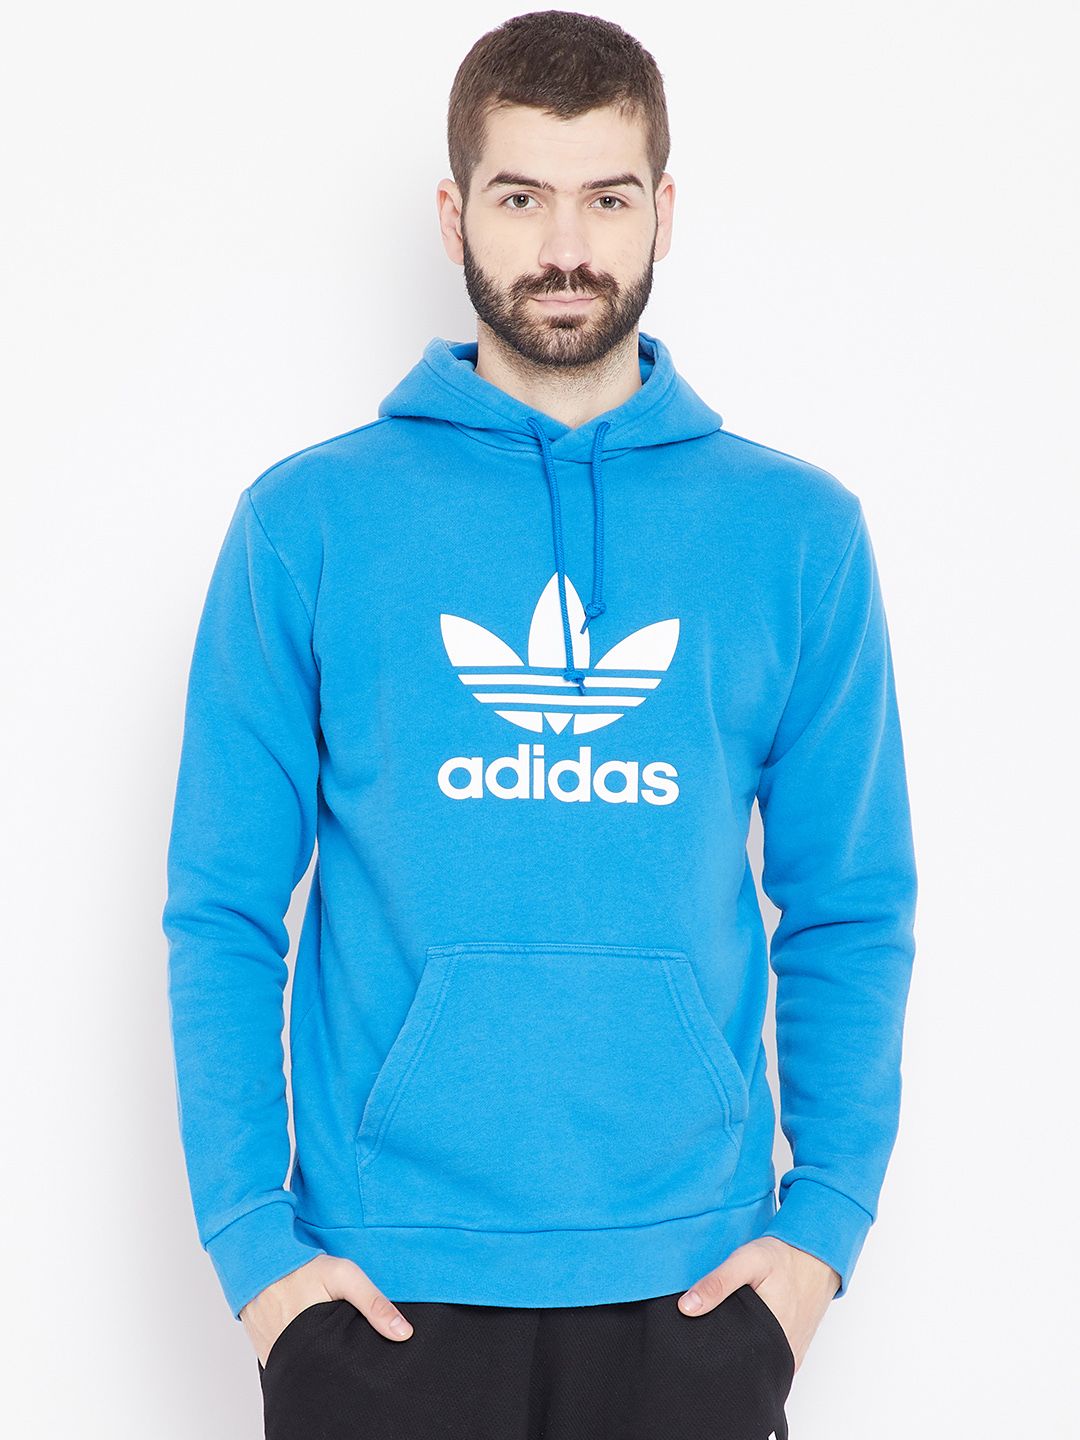 adidas sky blue hoodie